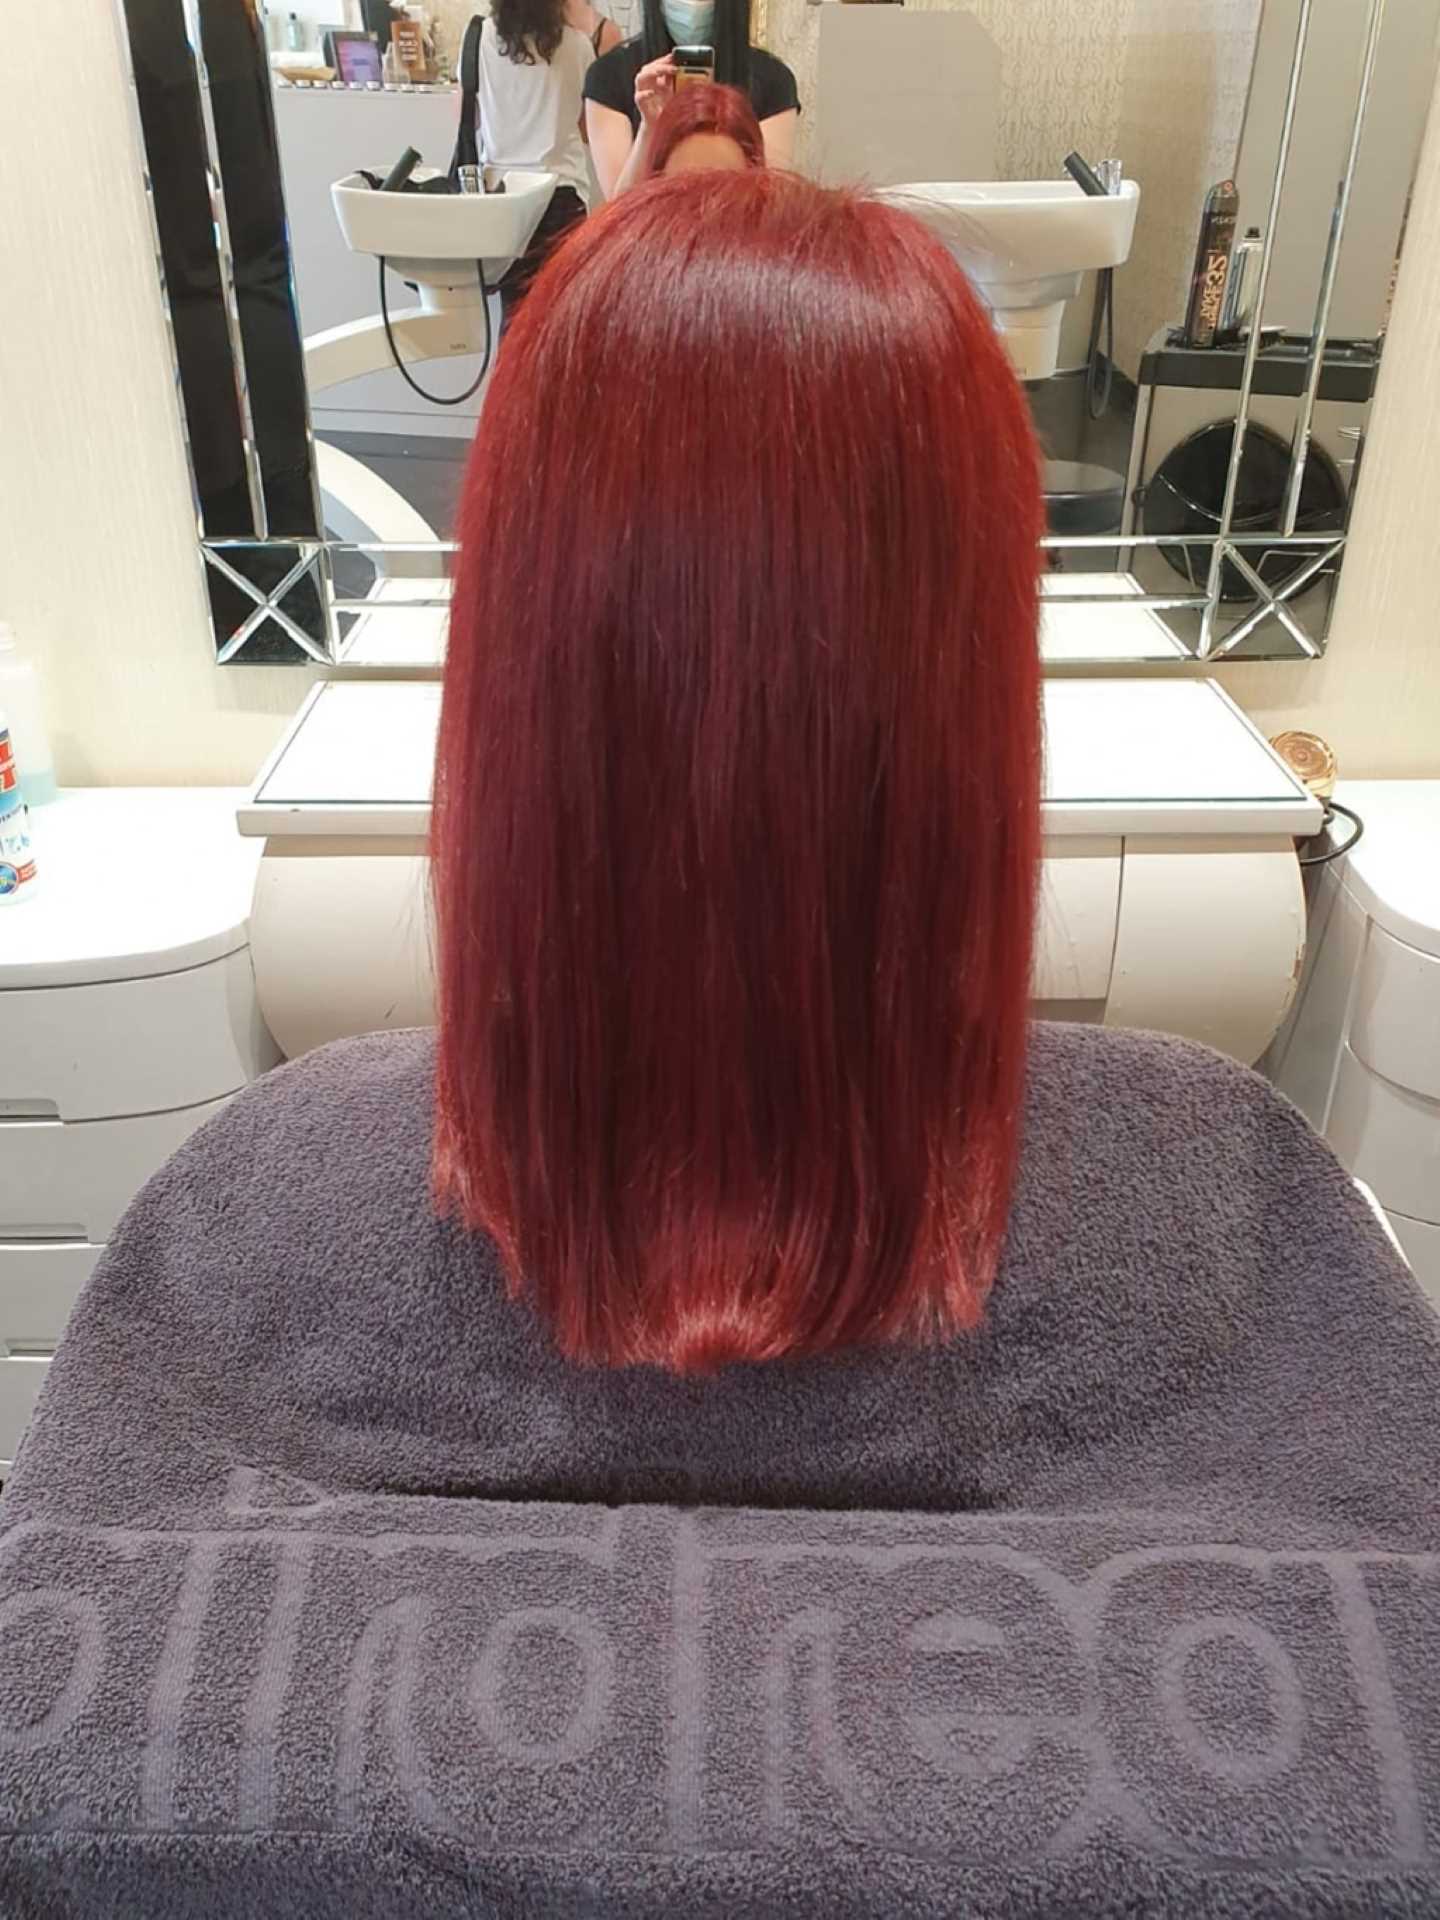 Nach einer Haarverdichtung in Längen und Spitzen bei einer Frau mit roten Haaren